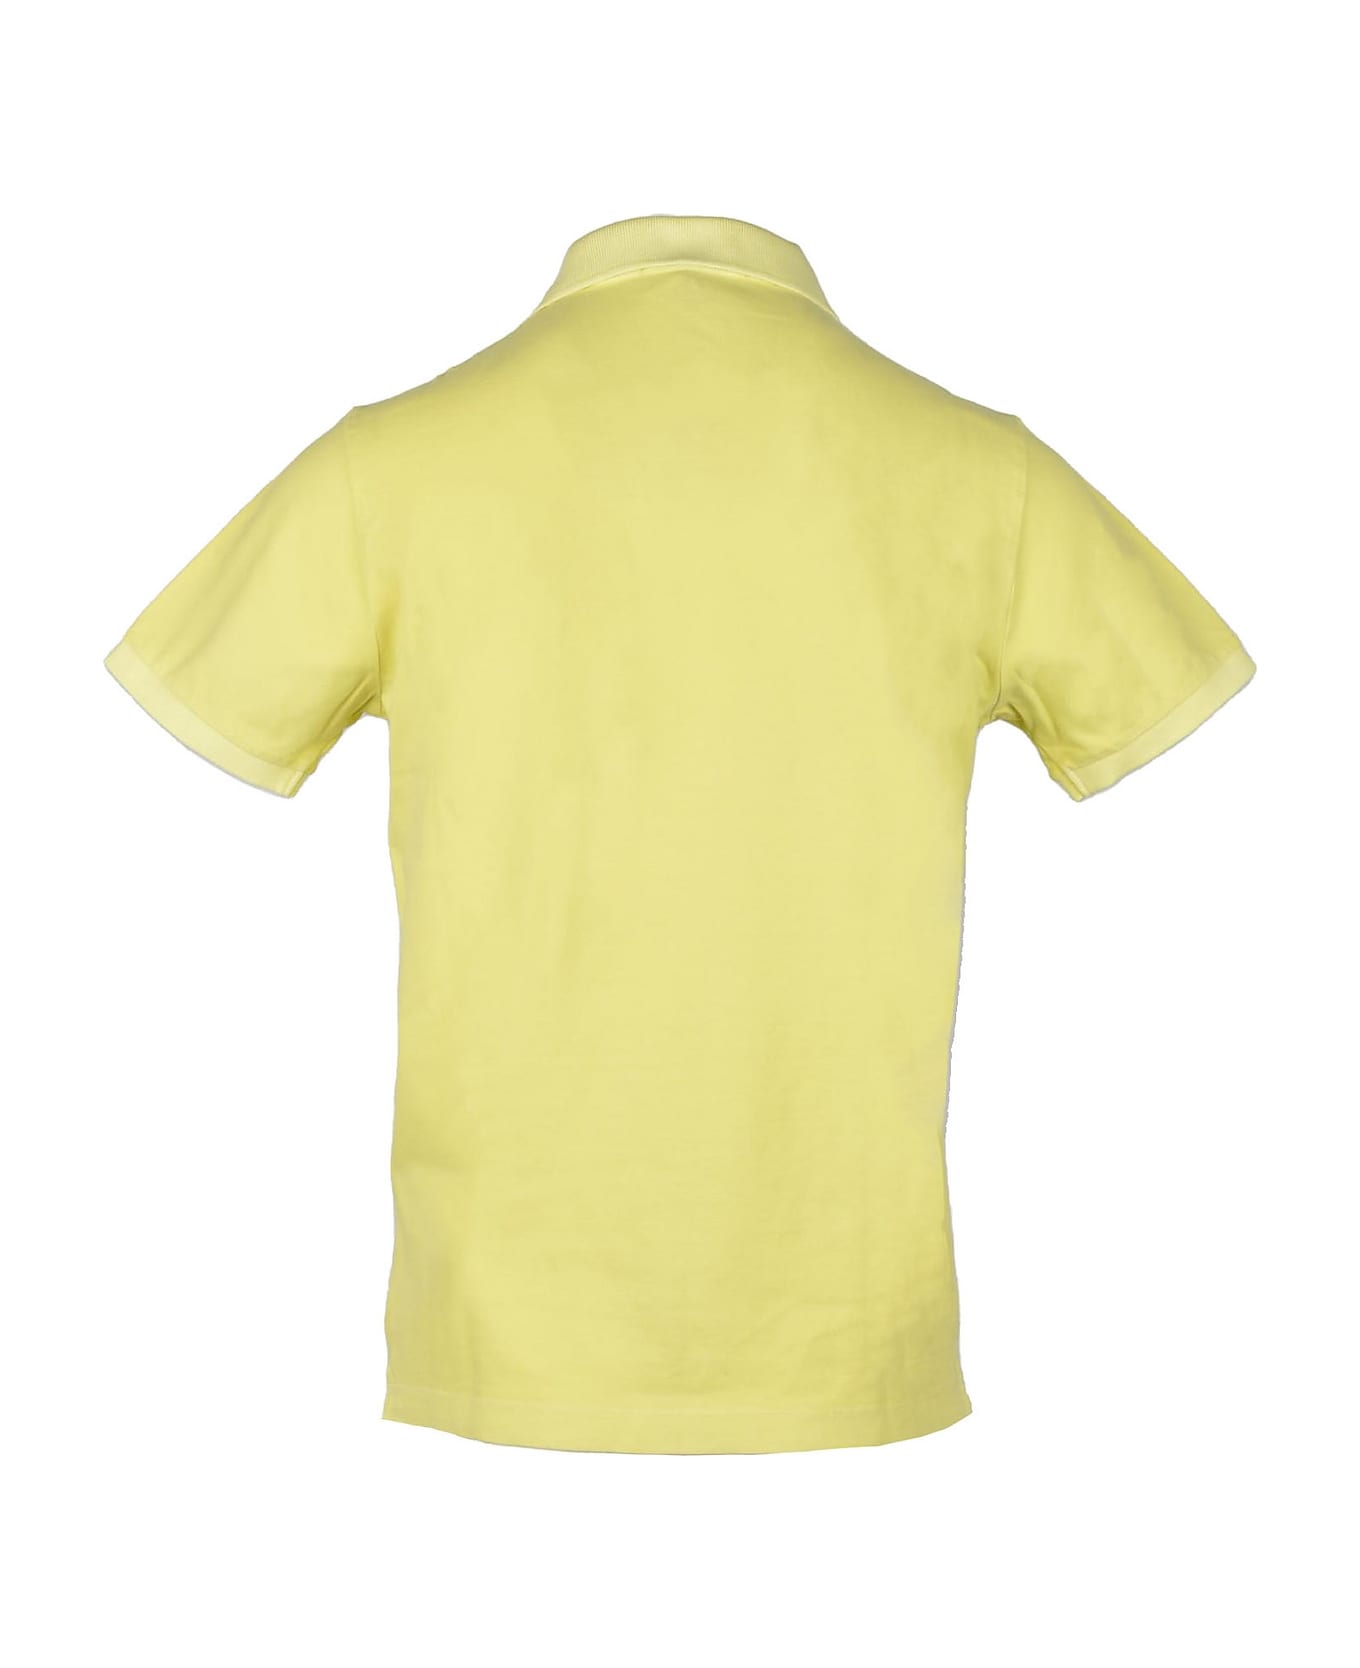 Stone Island Men's Yellow Shirt - Yellow